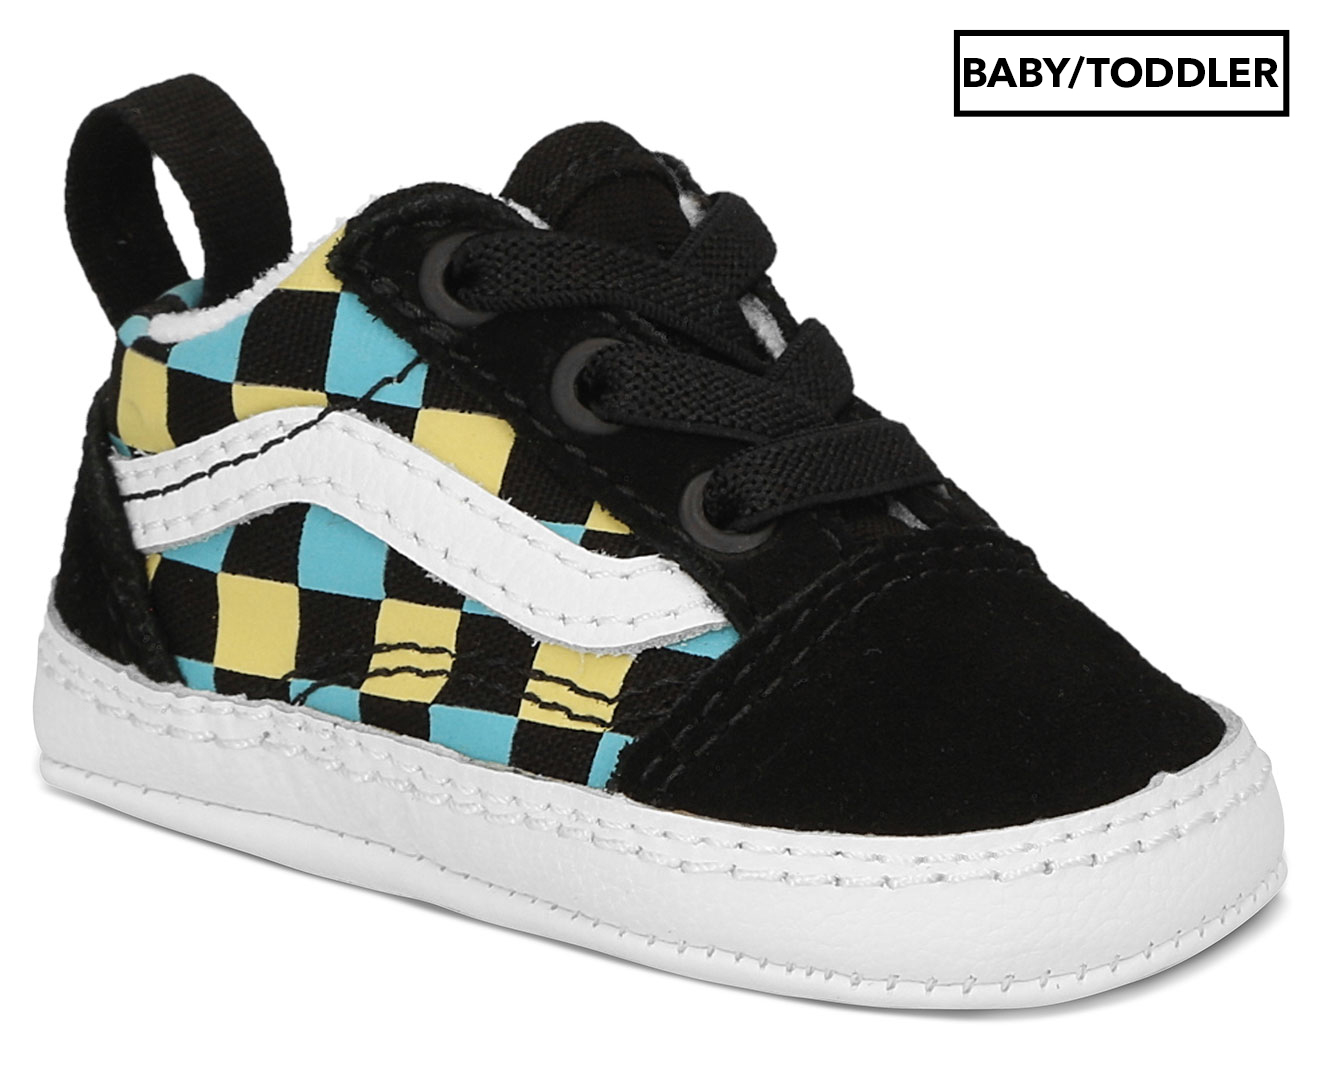 Vans Baby Old Skool Crib Sneakers - Black/Multi 